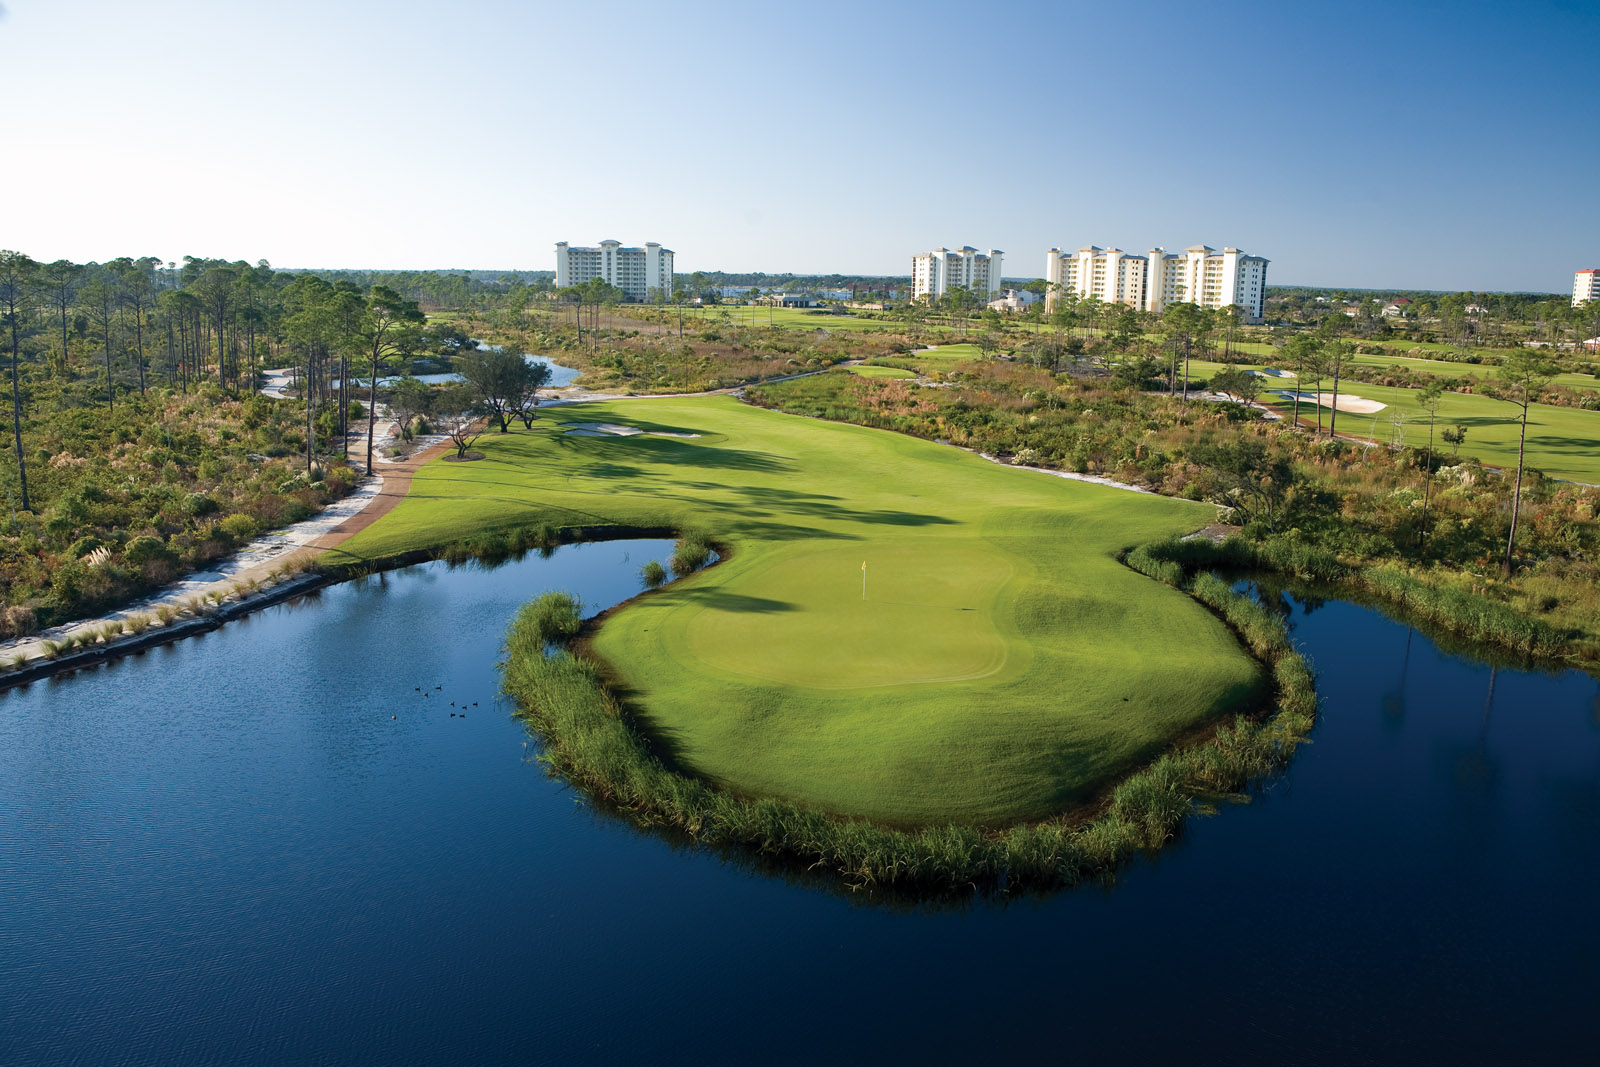 Lost Key Golf & Beach Club | Find My Next Gulf Coast Home